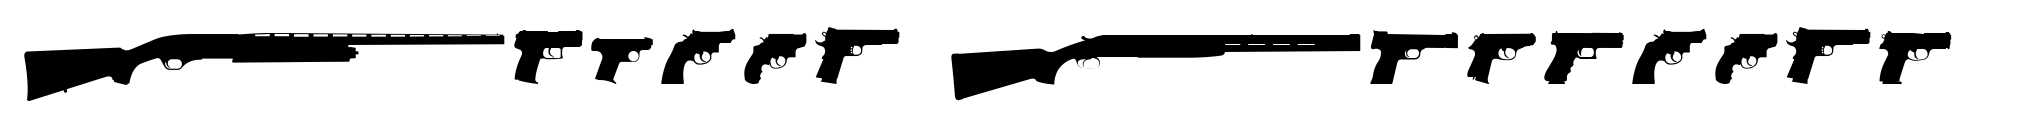 Combat Dingbats Handguns image